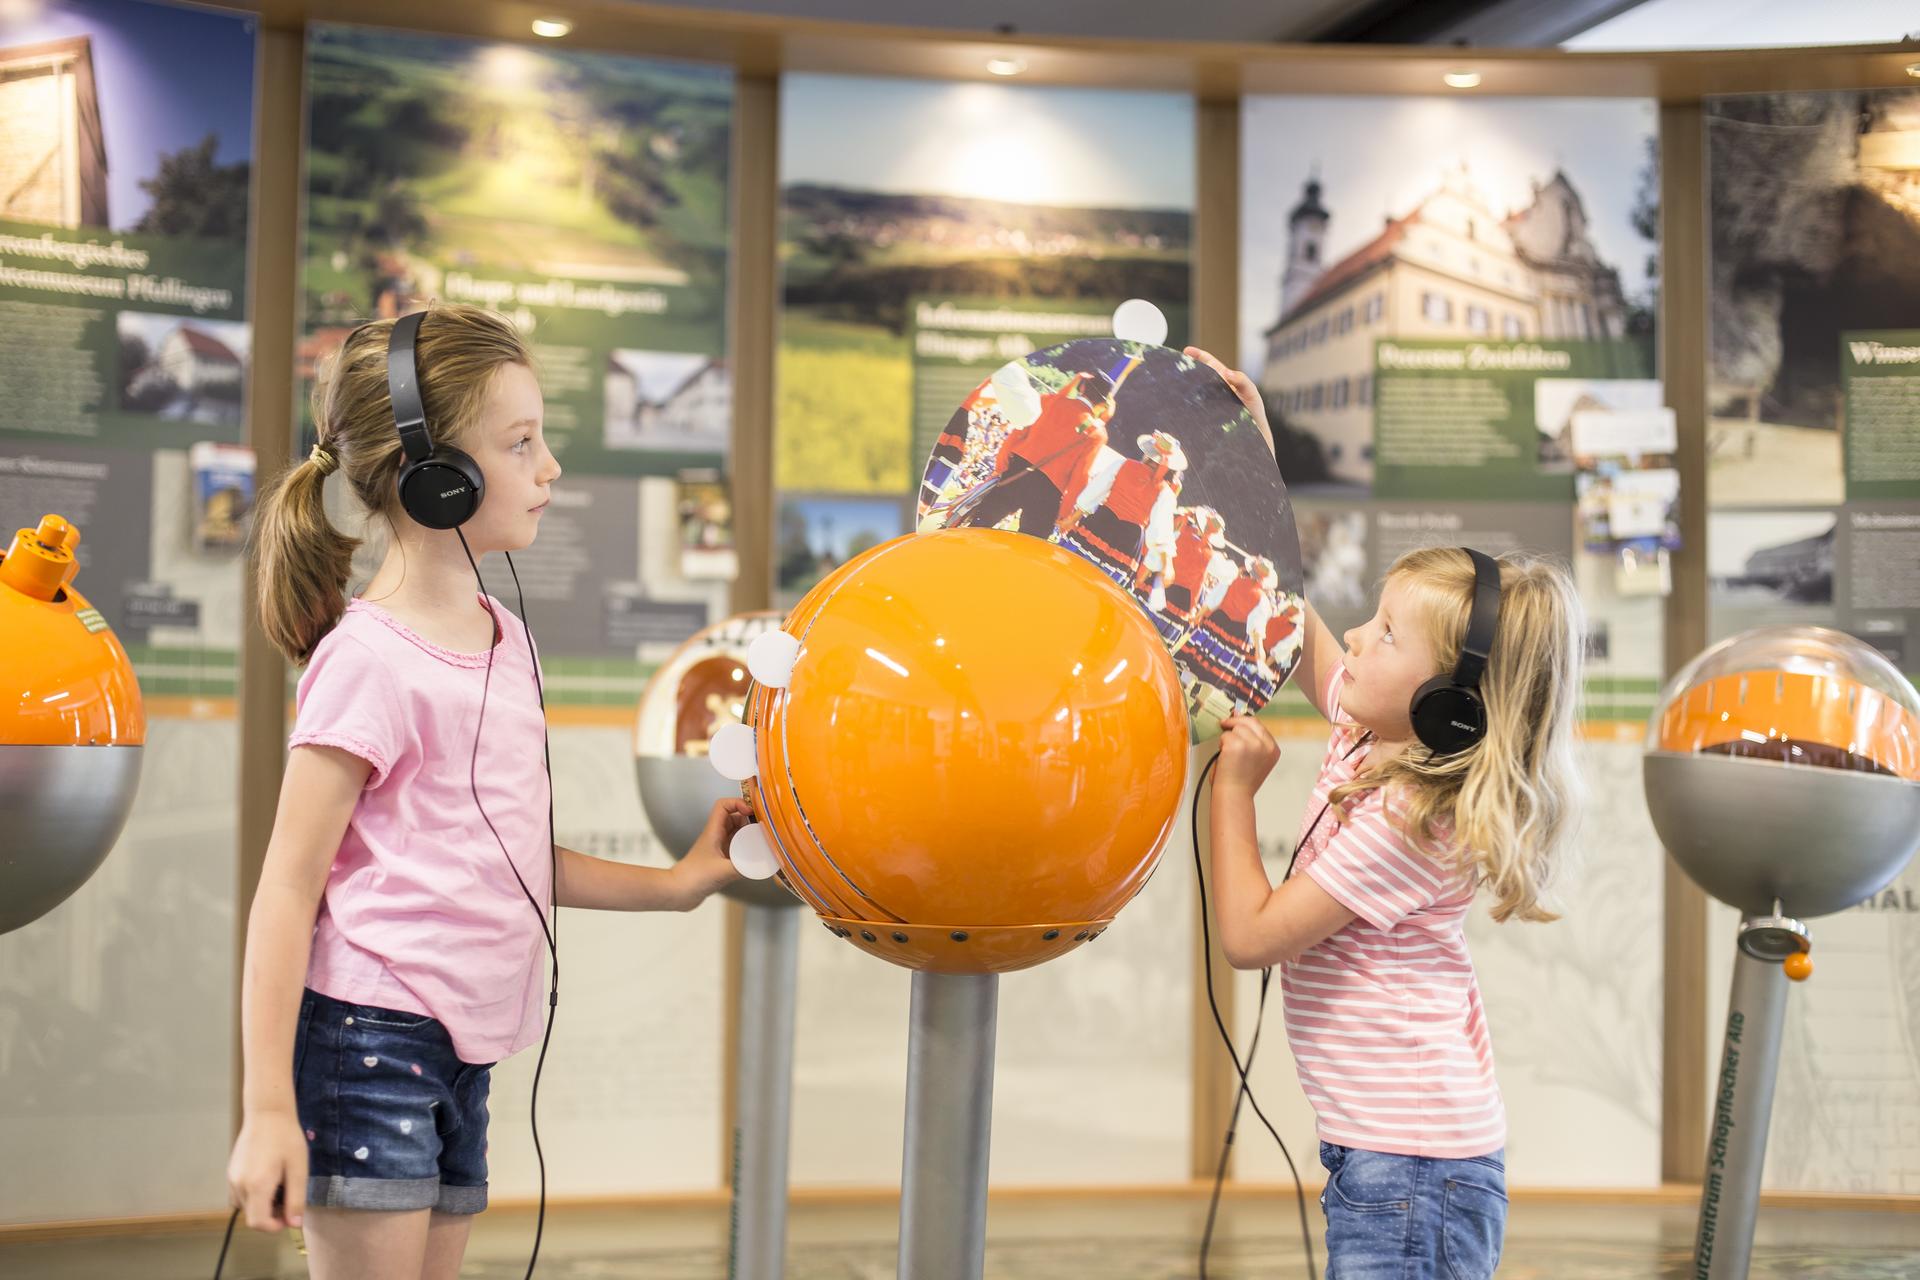 Ein Familienausflug ins Biosphärenzentrum Schwäbische Alb in Münsingen im Biosphärengebiet Schwäbische Alb. Zwei Kinder stehen mit Kopfhörern an einem interaktiven Ausstellungsstück: Eine orangefarbene Kugel, aus der ein Kind ein Bild herauszieht. Im HIntergrund sind weitere Kugeln und Erklärtafeln.